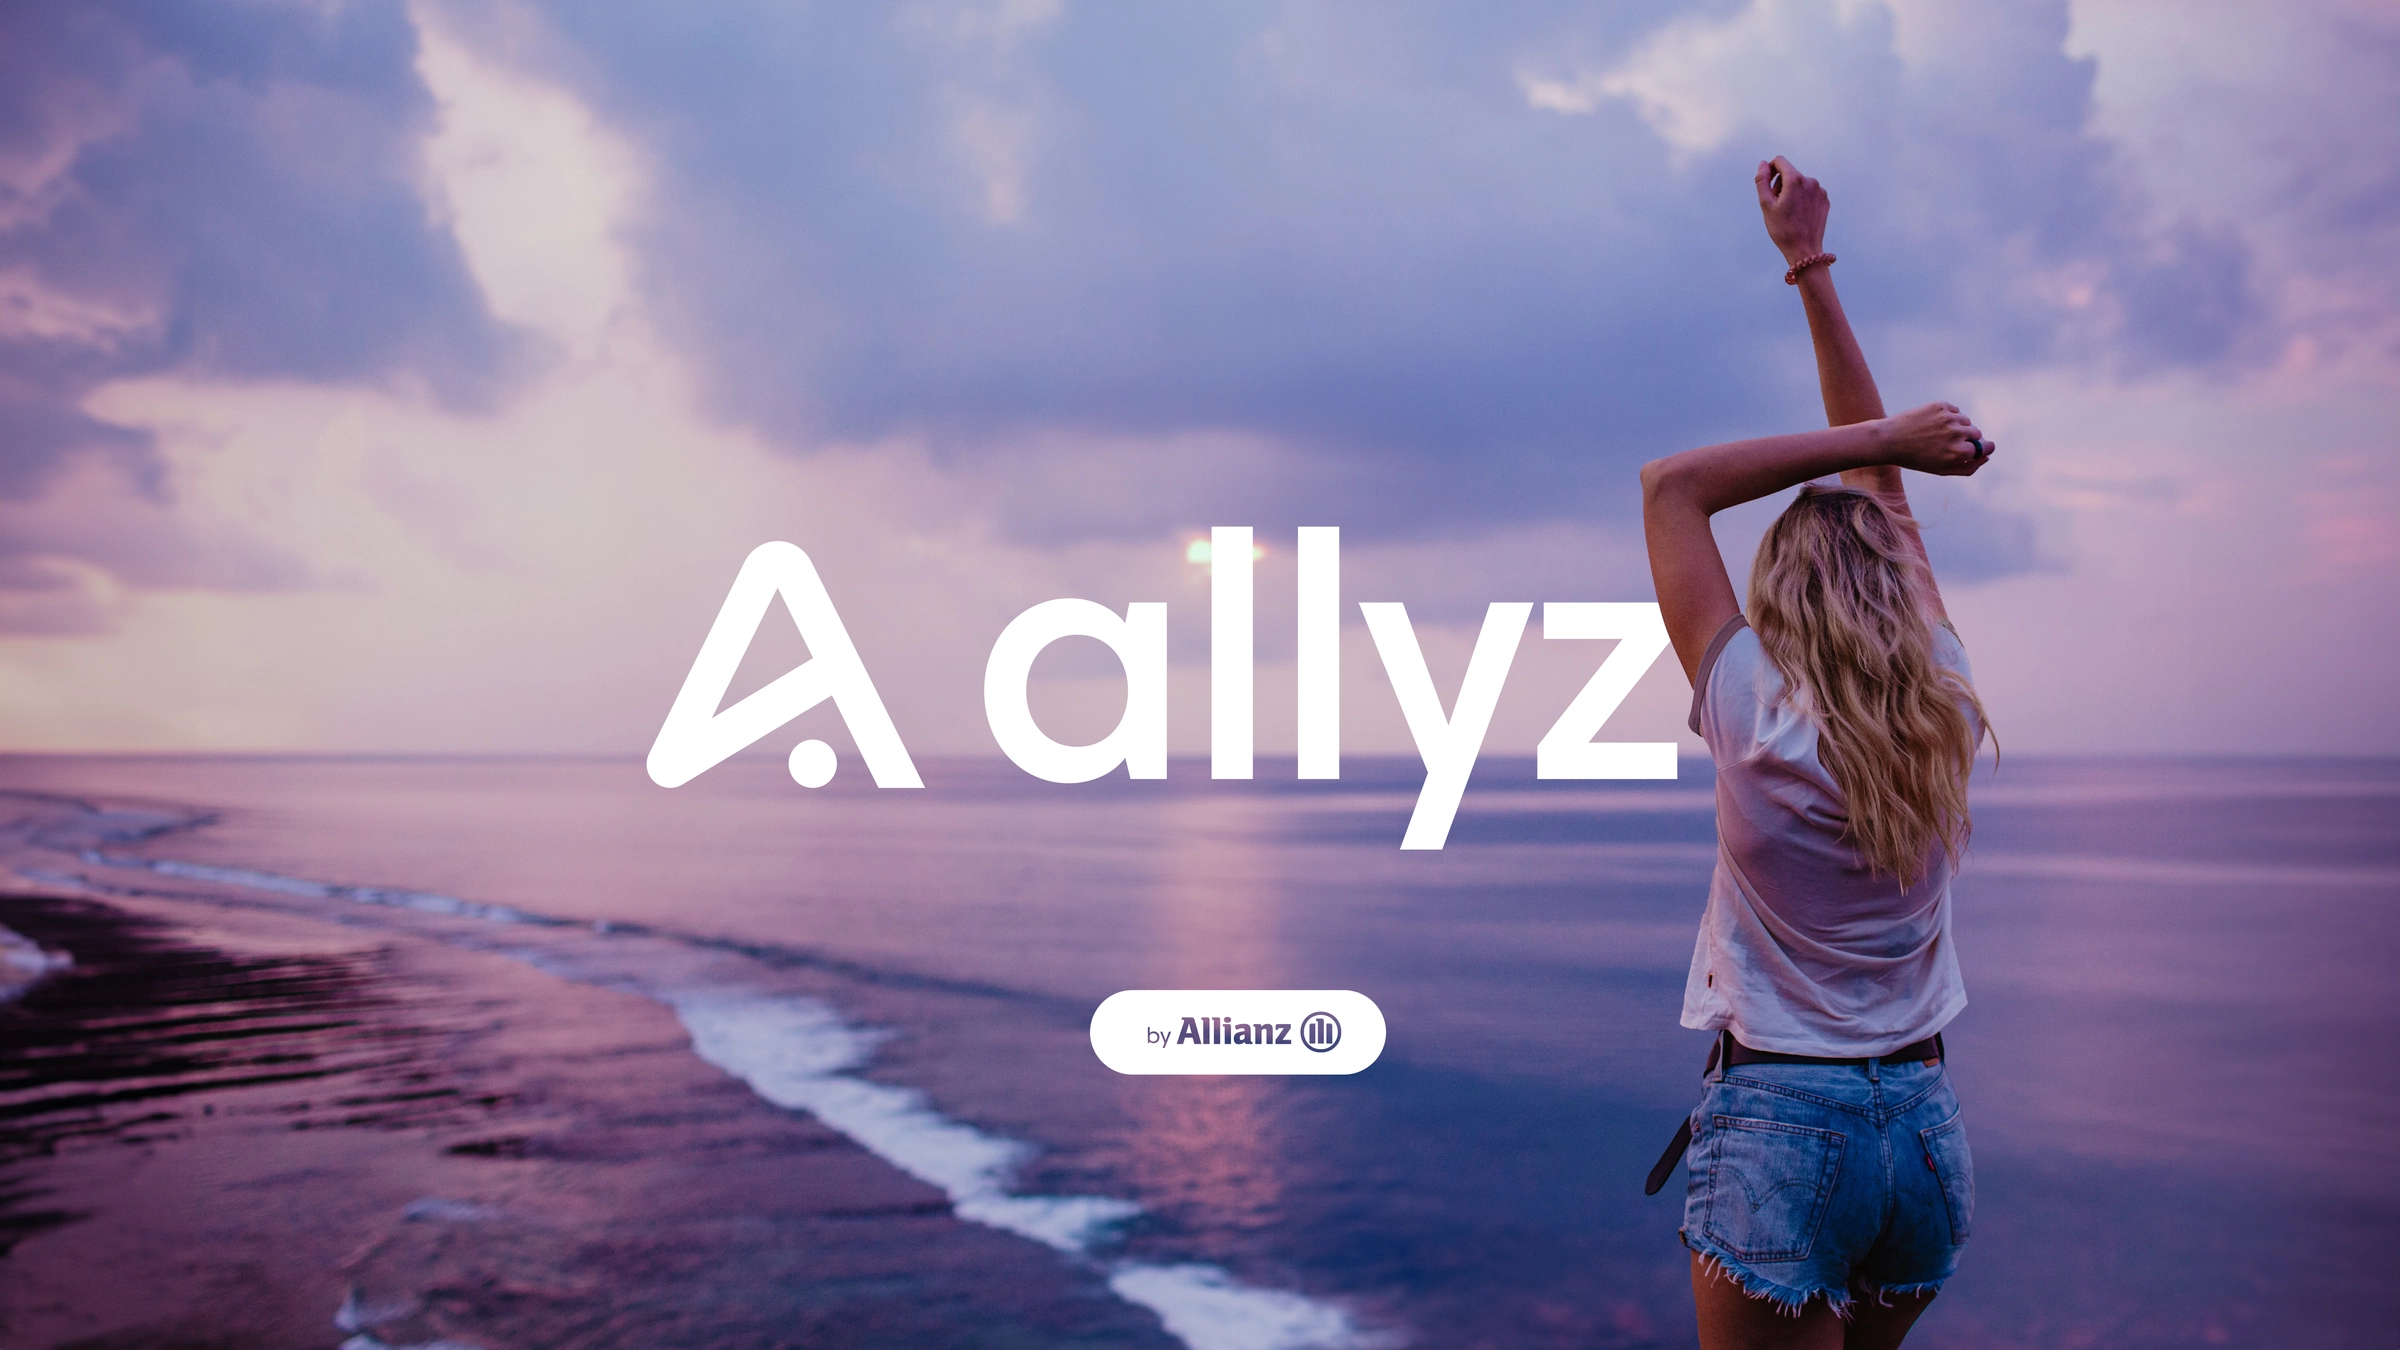 allyz: Amplify your journey